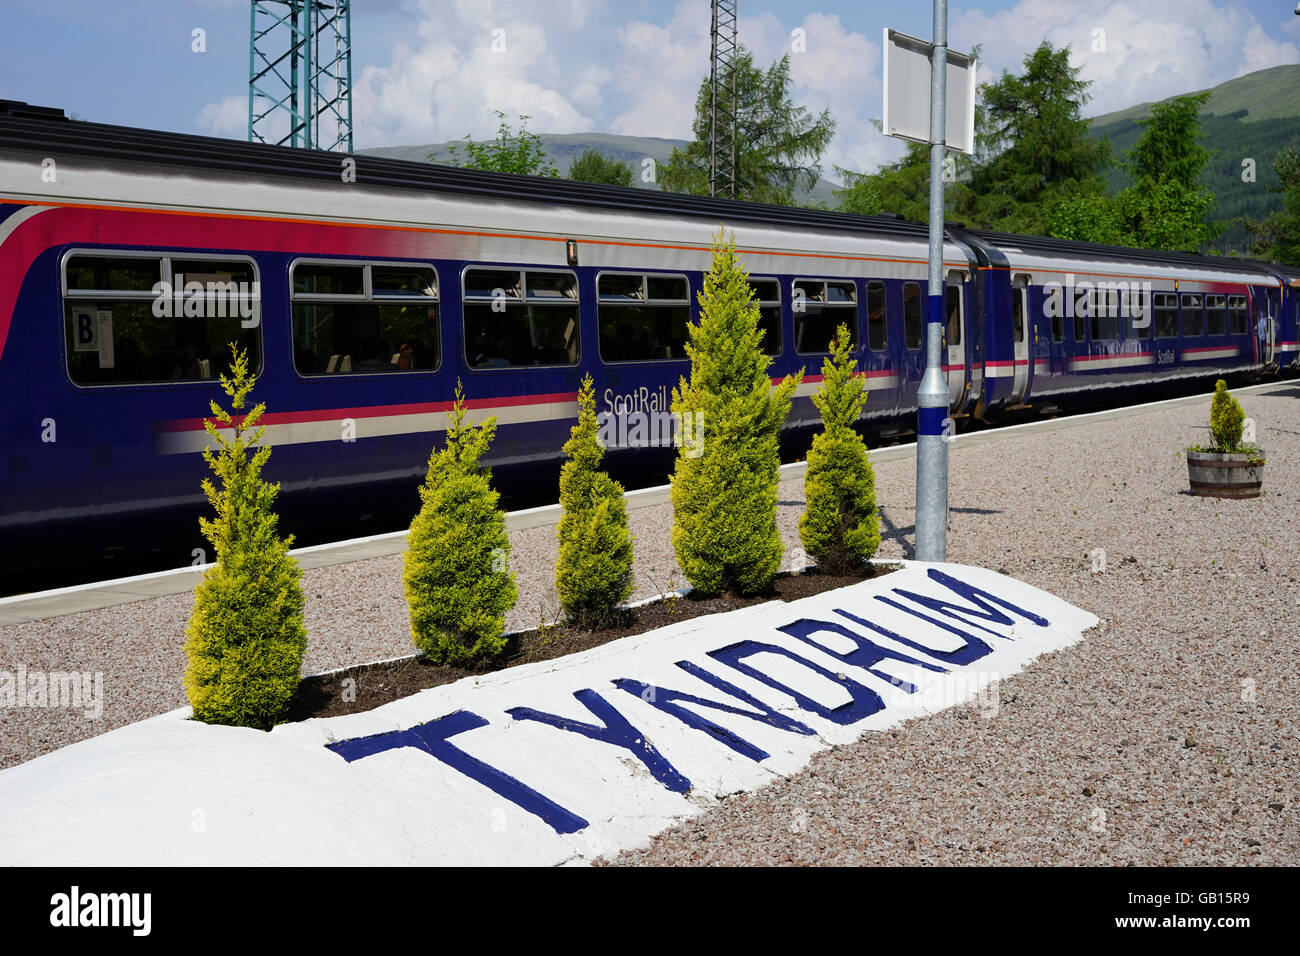 Scotrail commuter train s'arrêtant à la gare ferroviaire de Tyndrum Tyndrum,,Crianlarich, Stirlingshire, Scotland, UK. Banque D'Images